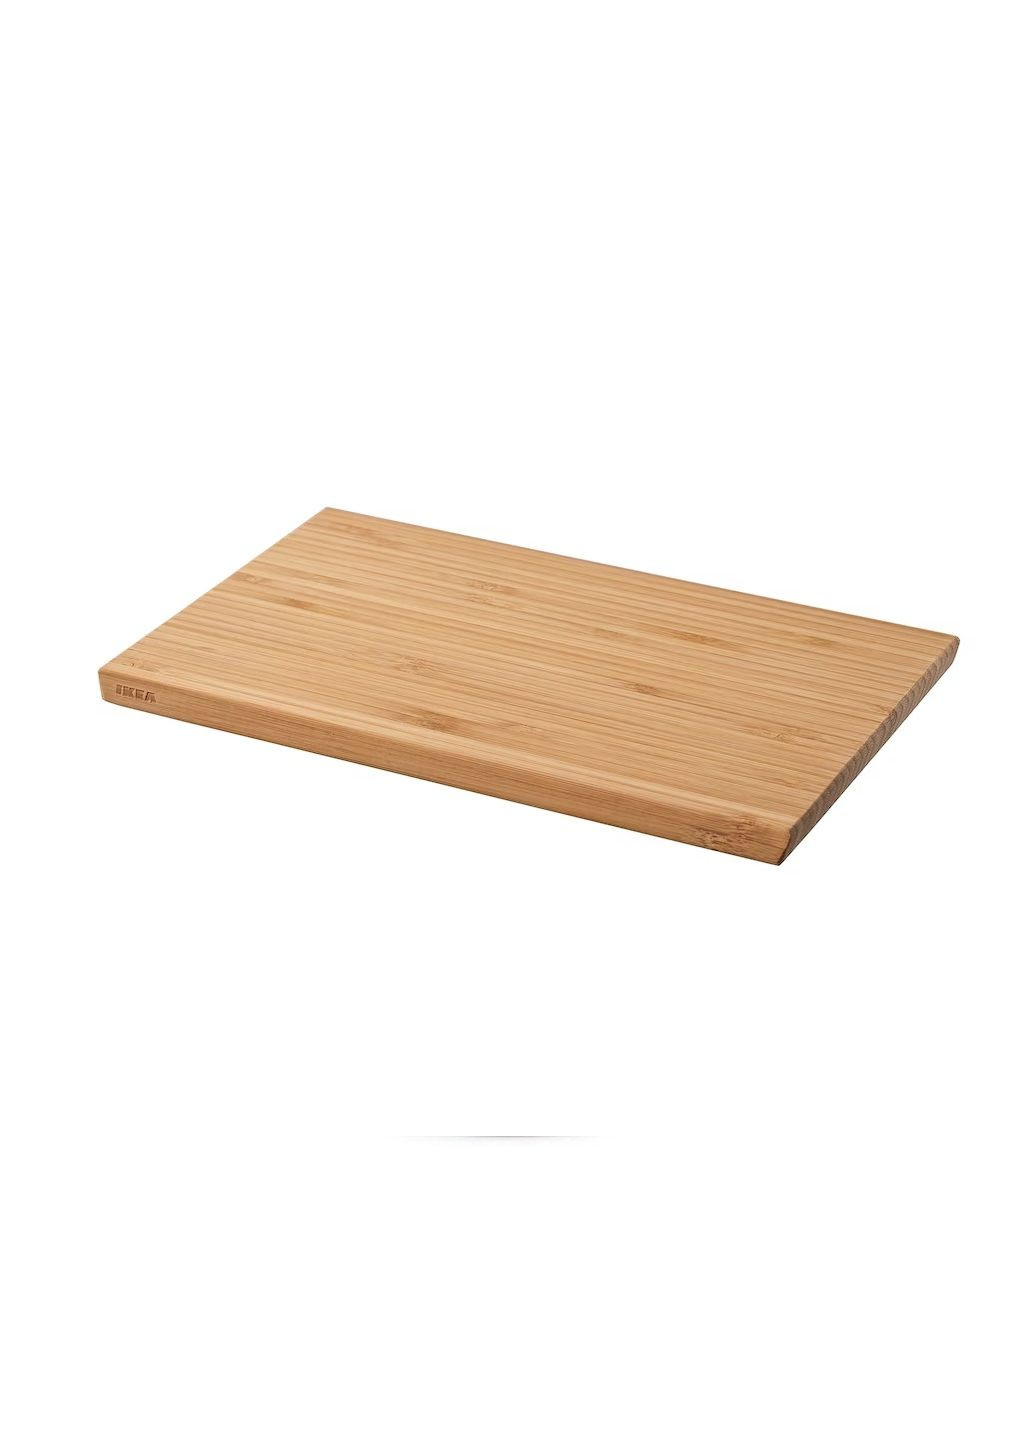 Разделочная доска, бамбук, 24х15 см IKEA aptitlig (265211451)